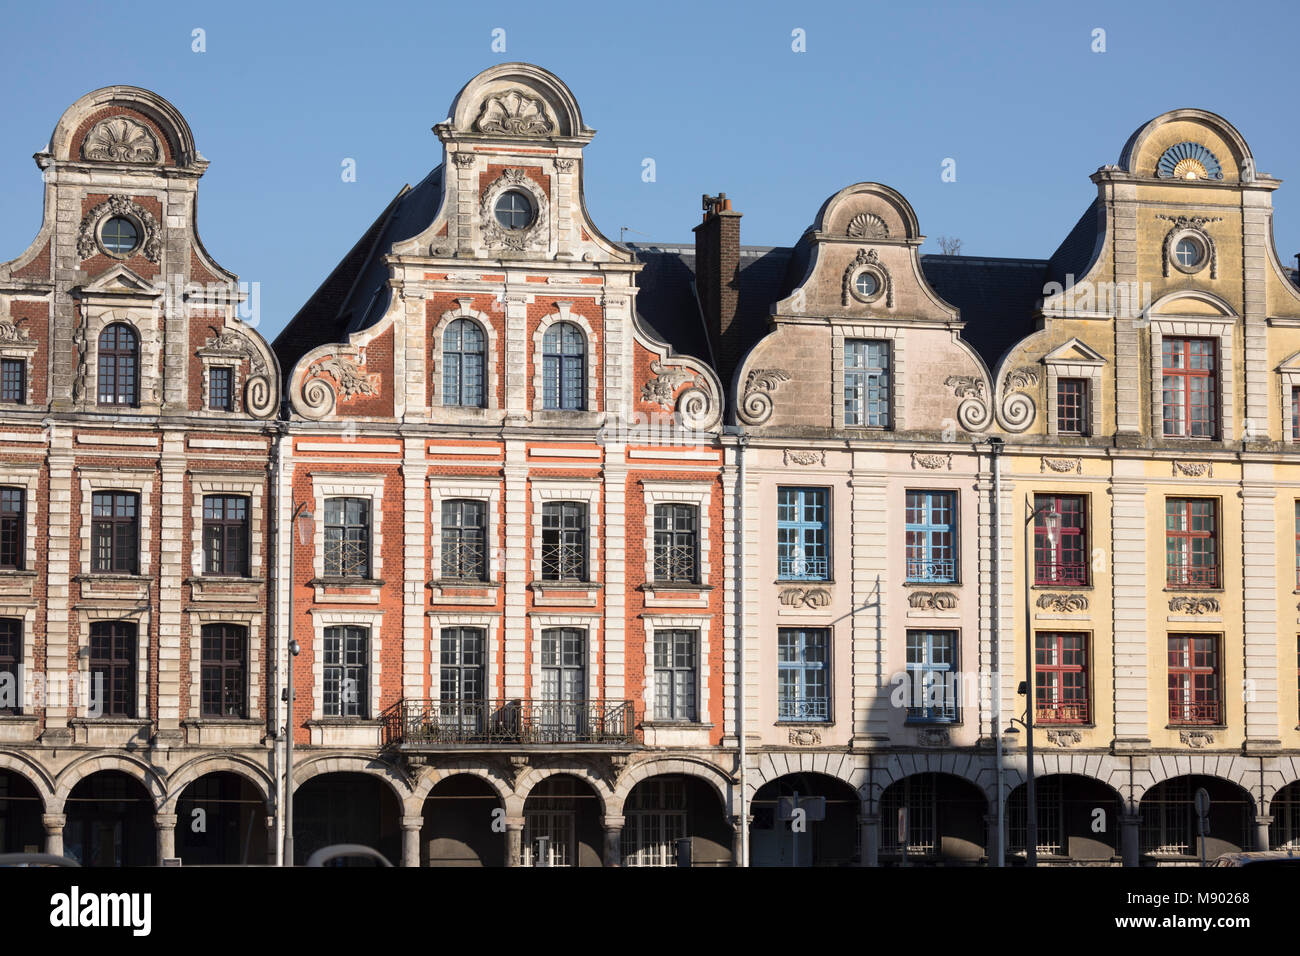 Flemish style facades on Grand Place, Arras, Pas-de-Calais, Hauts-de-France region, France, Europe Stock Photo